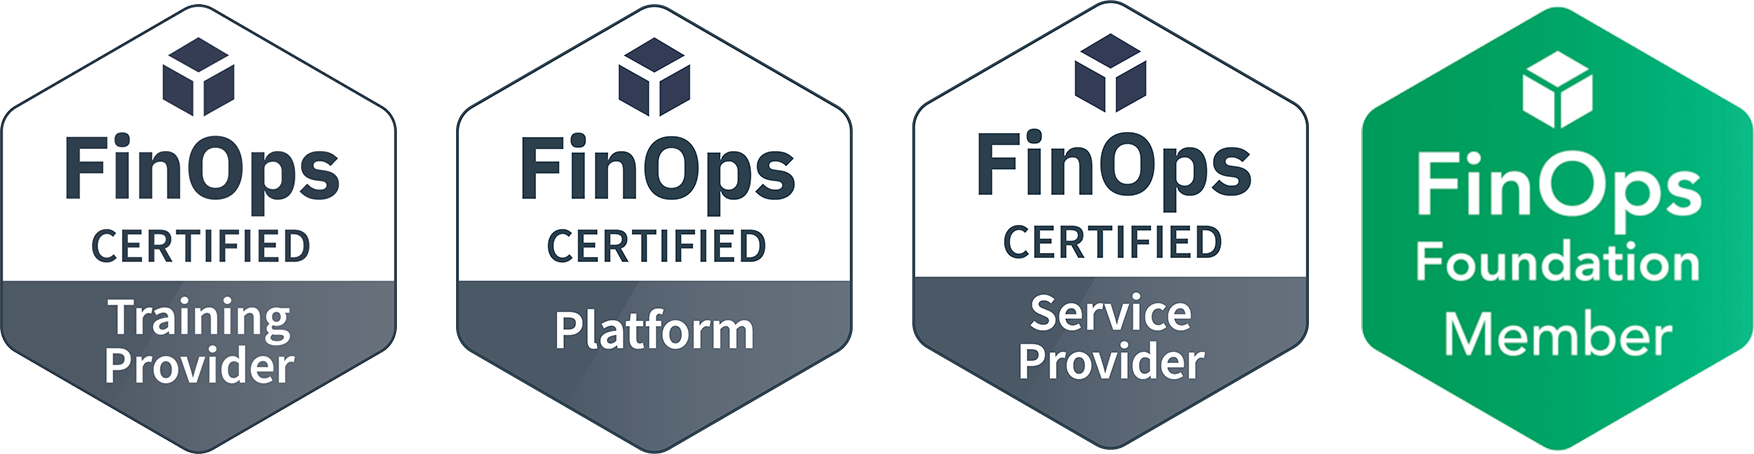 FinOps Certified Service Provide